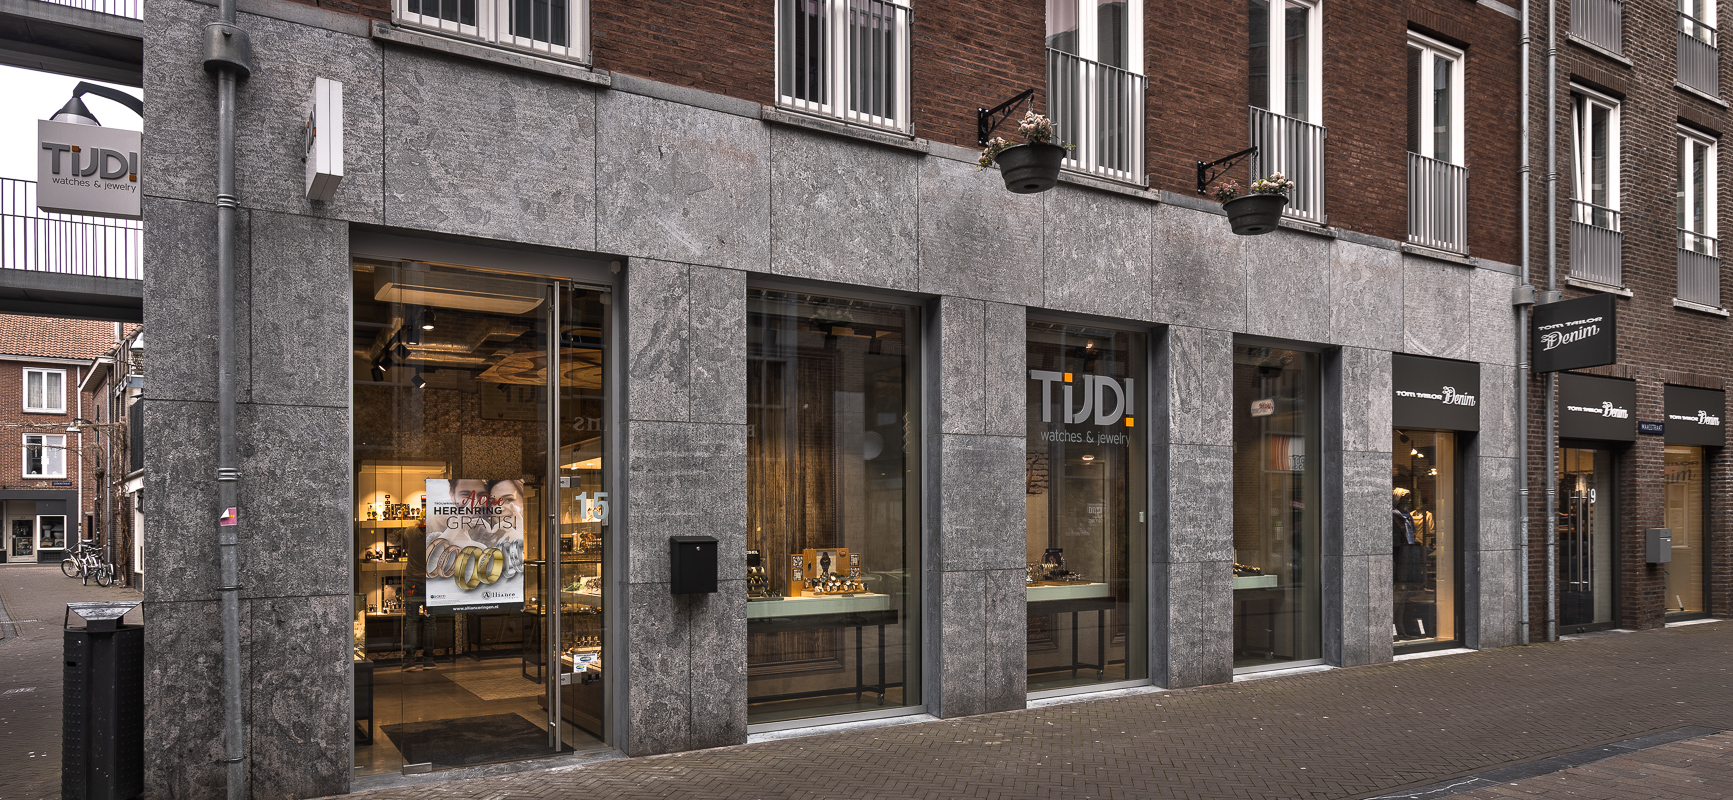 Tijd! Watches & Jewelry | Venlo (NL) - Bijouterie